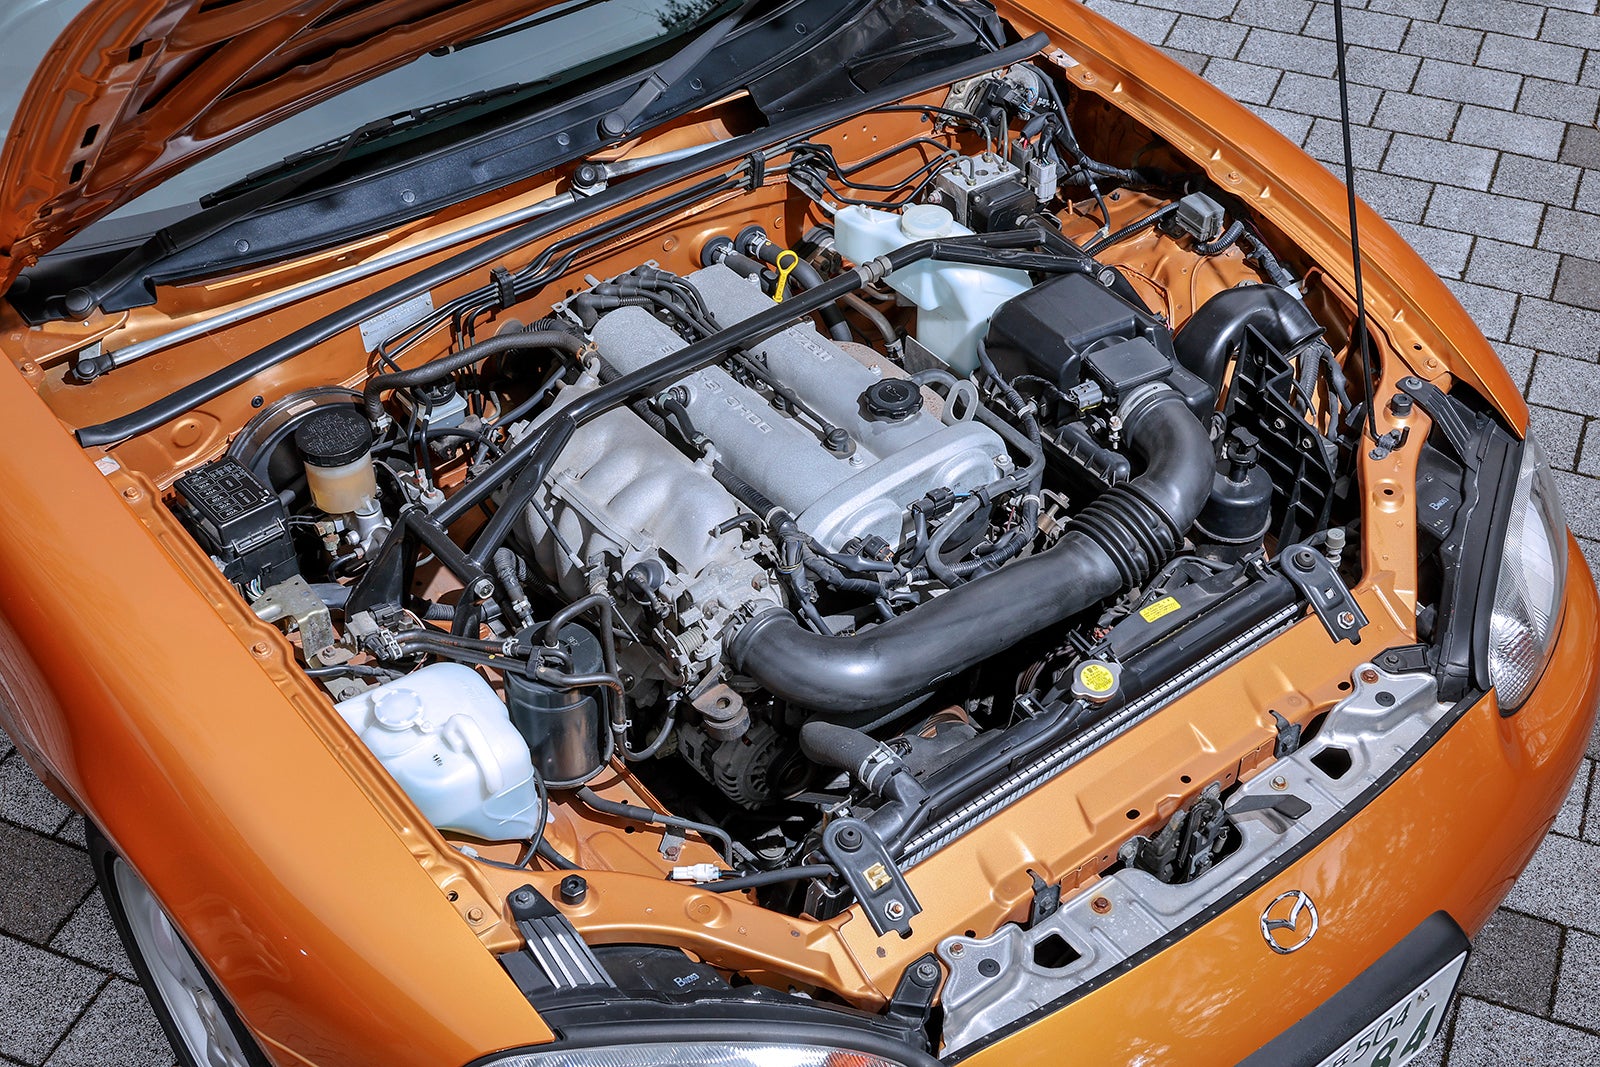 RSに搭載される1.8リッターのBP-ZE（RS）型エンジンは最大出力145馬力。フロントサスタワーバーはRSの標準装備となる。